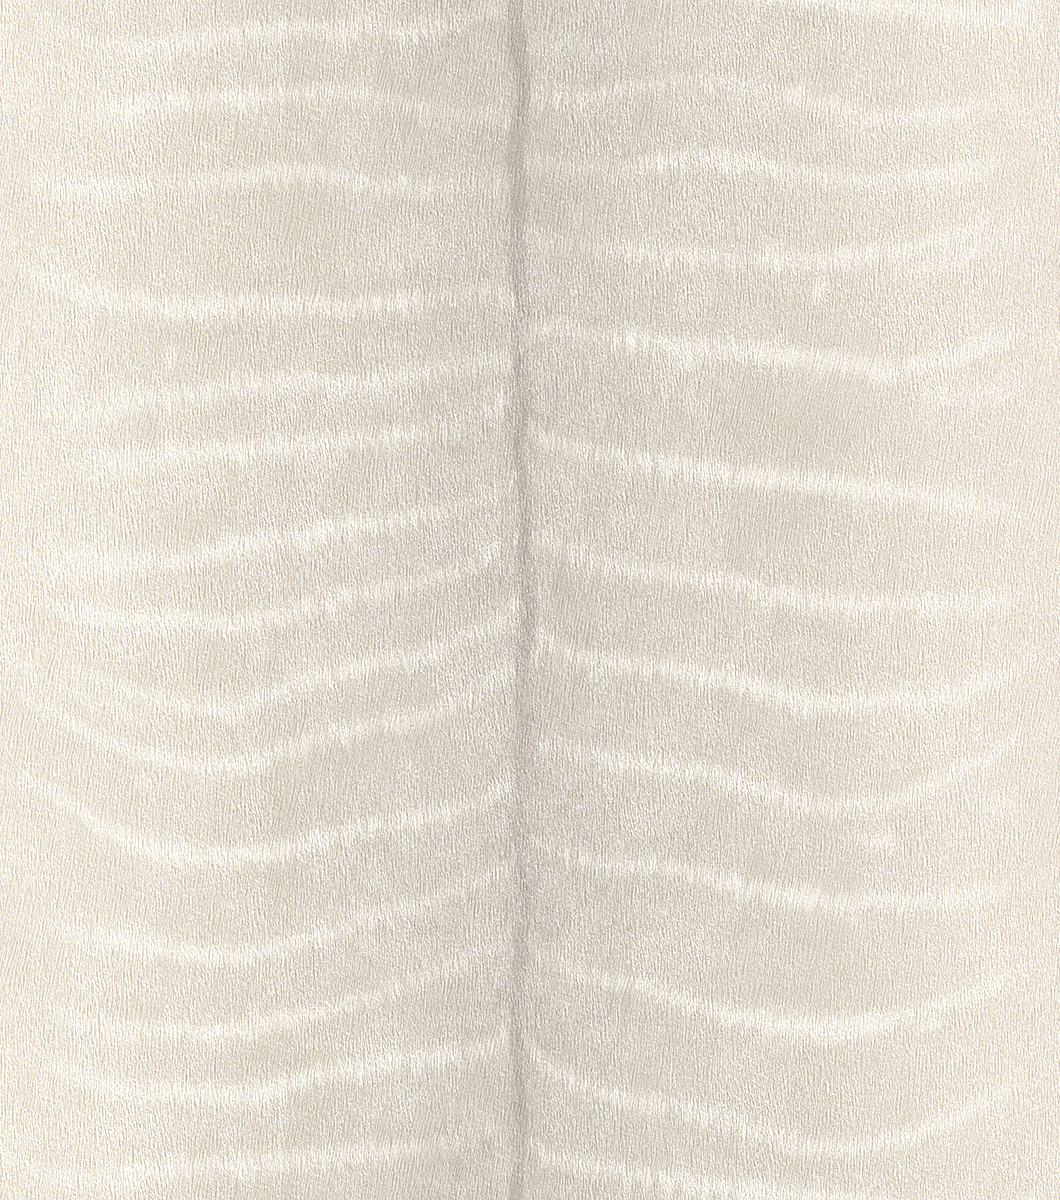 Halvány szürke-beige-fehér színű antilop hatású tapéta